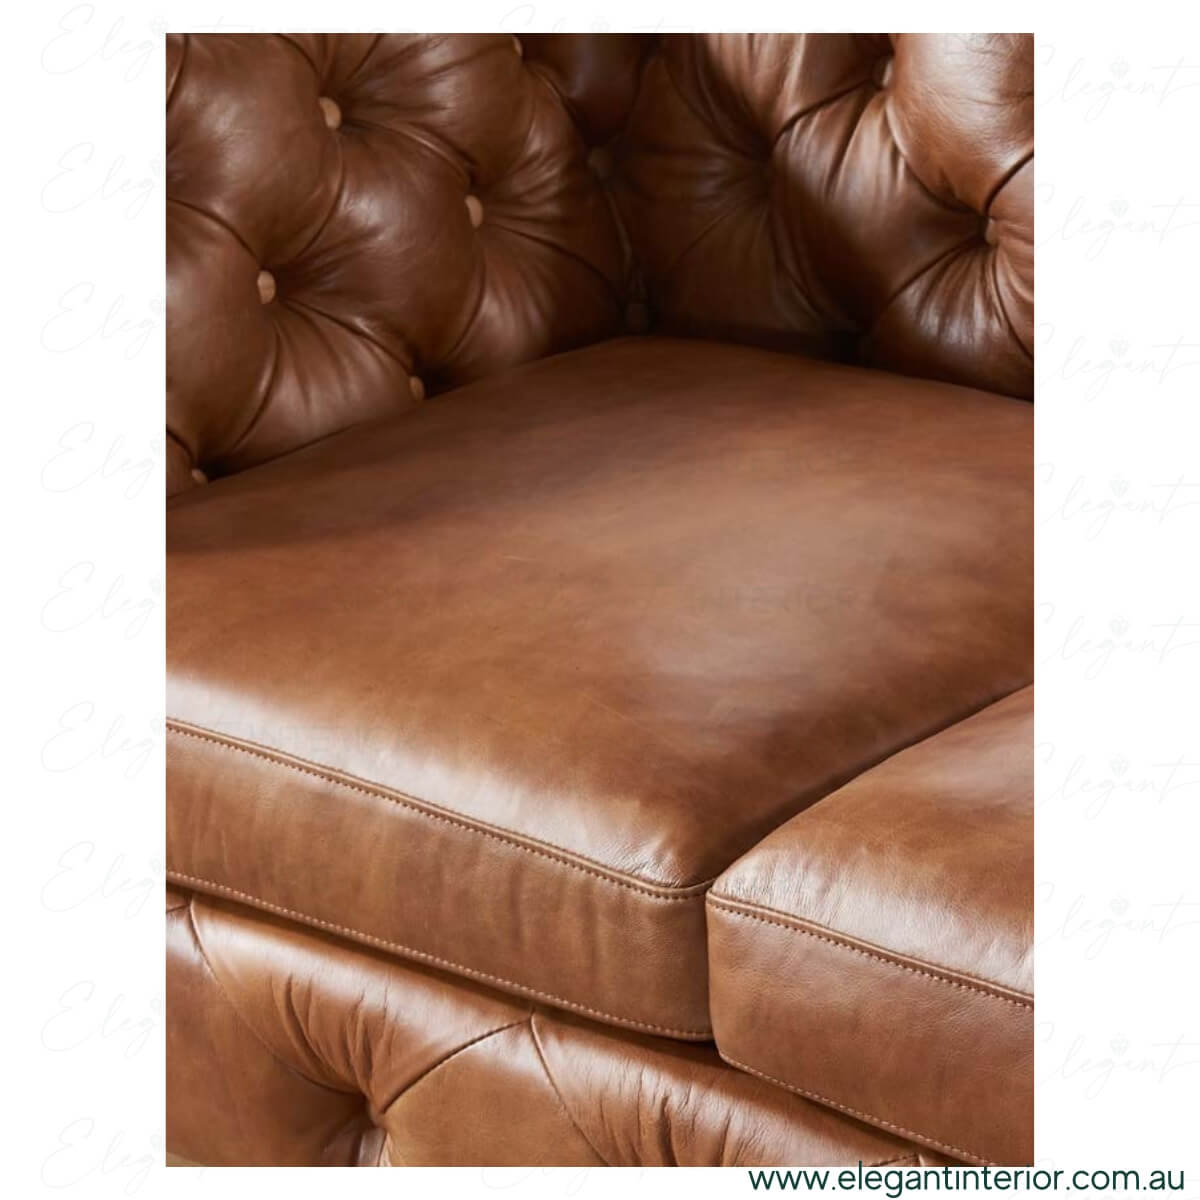 American-Leather-in-Australia-Elegant-Interior-Australia-4